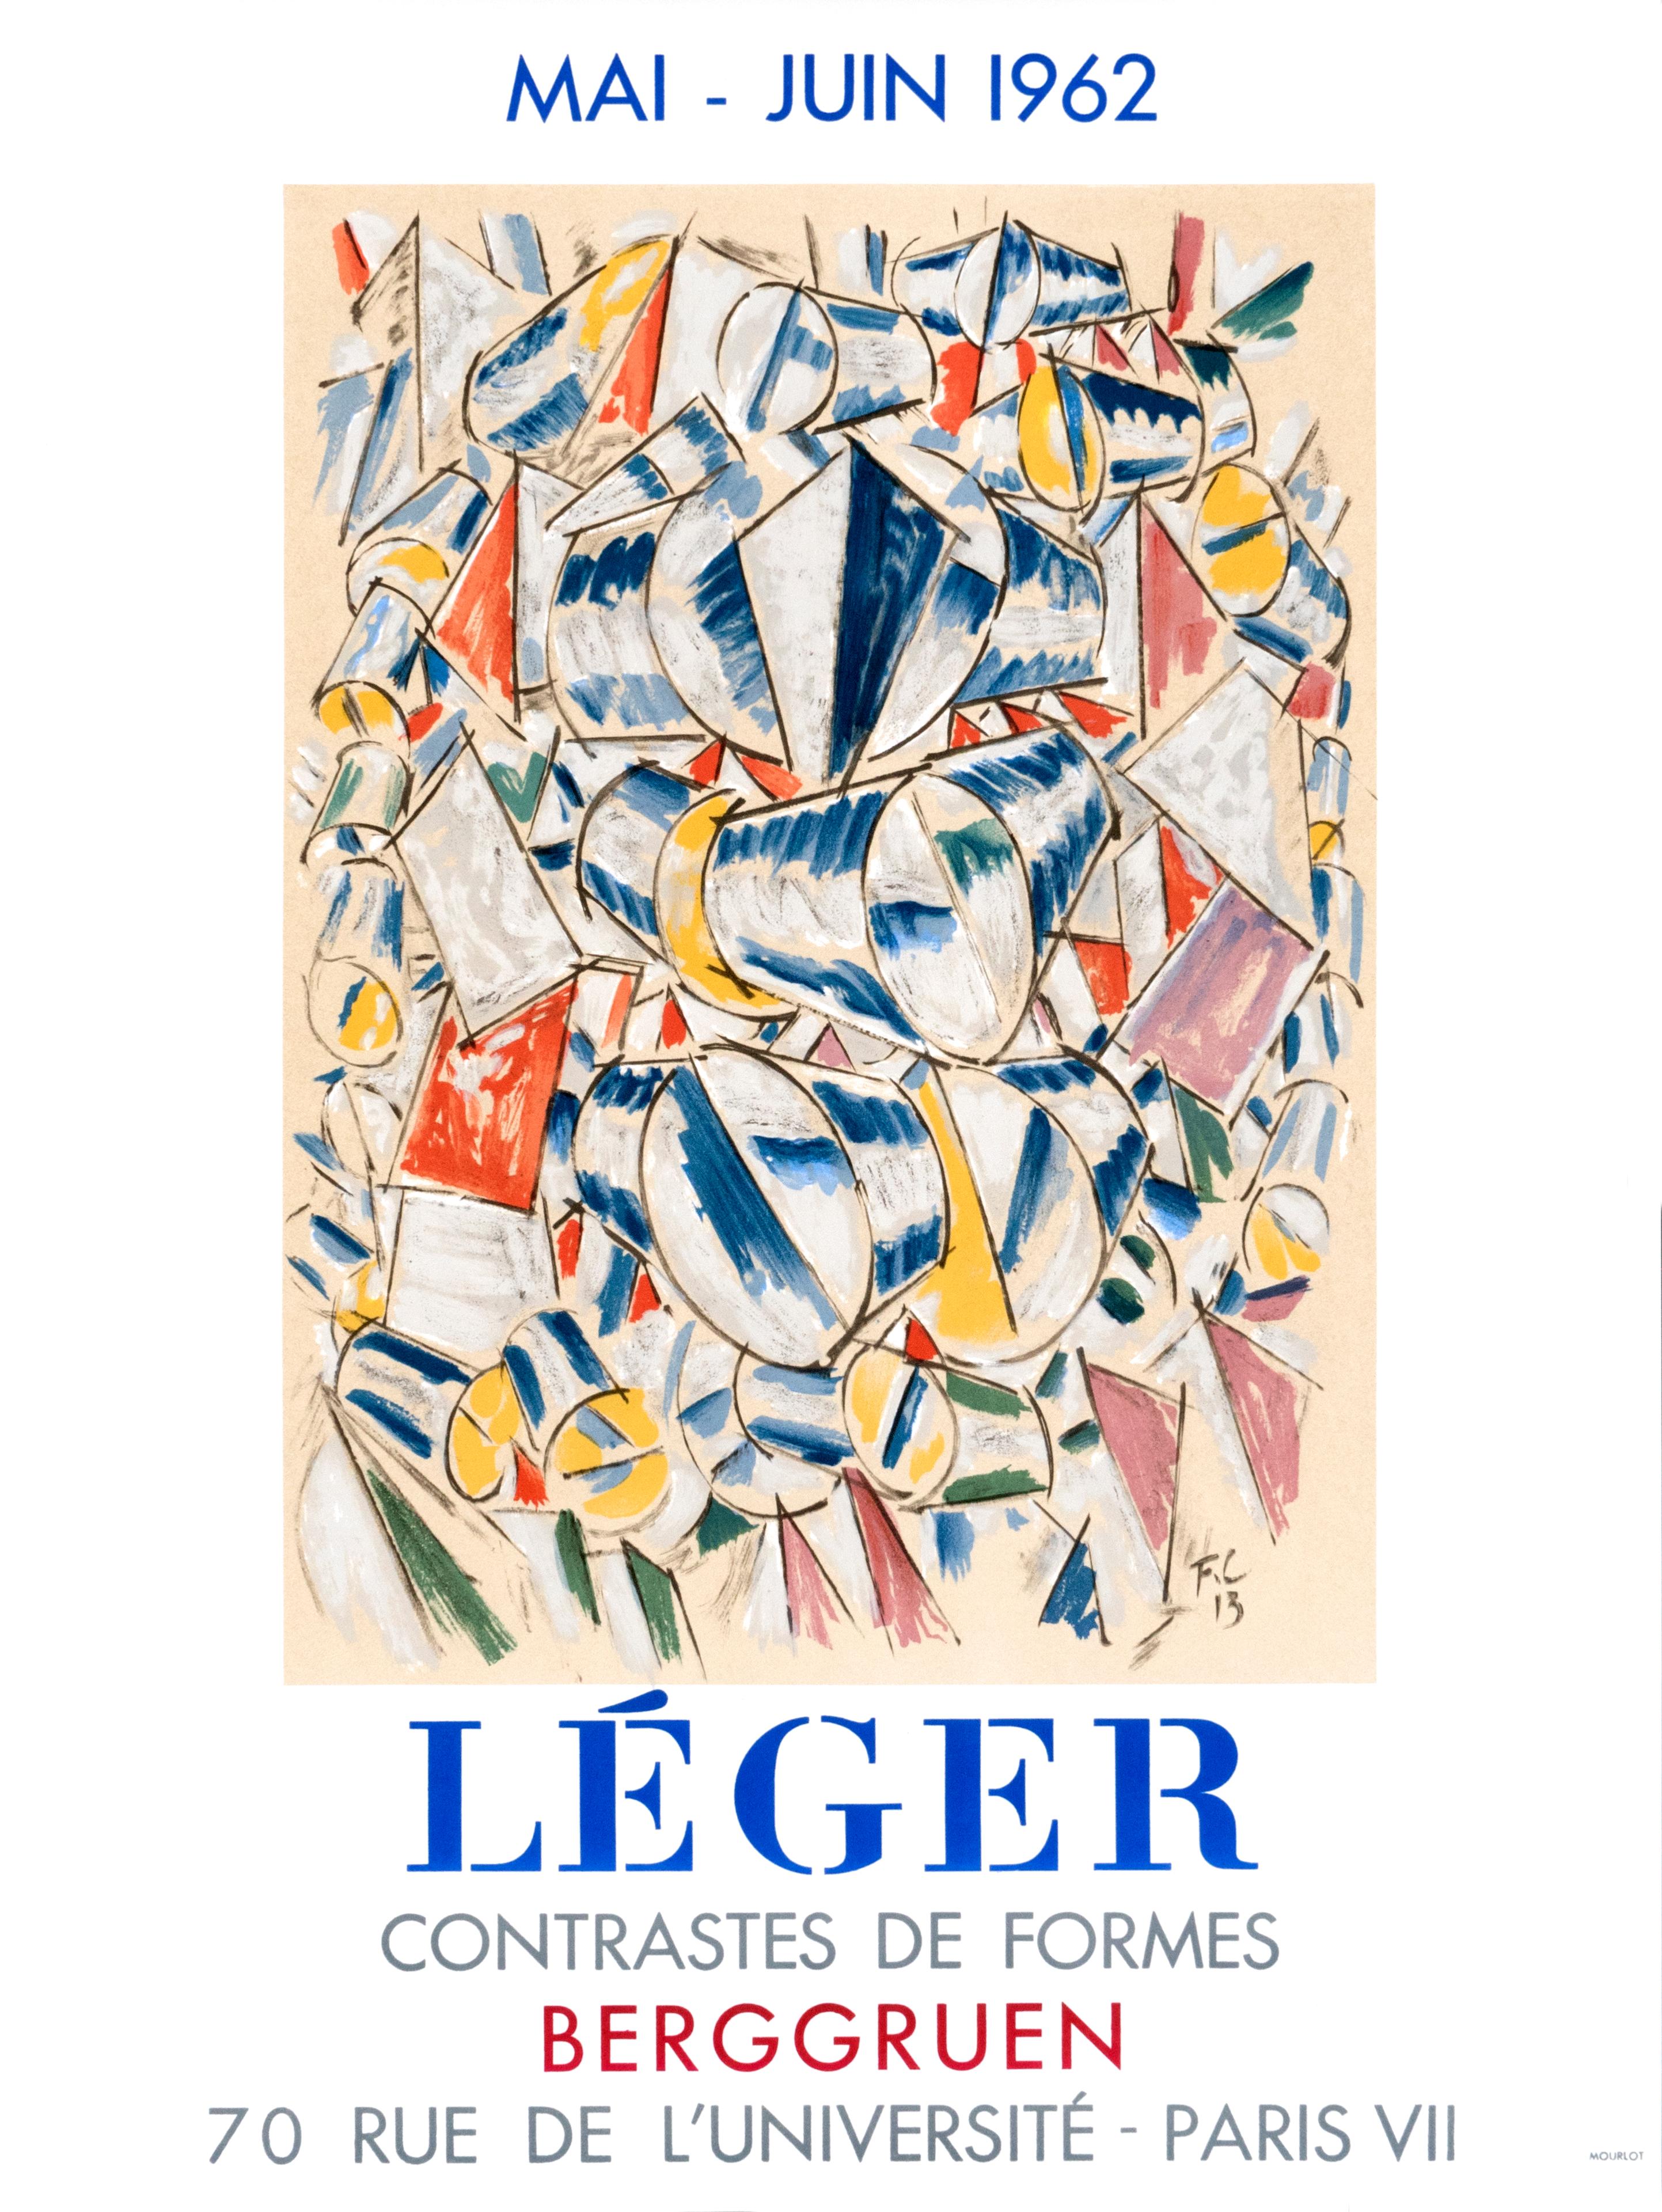 "Leger - Contrastes de Formes - Berggruen" Original Vintage Exhibition Poster - Print by (after) Fernand Léger